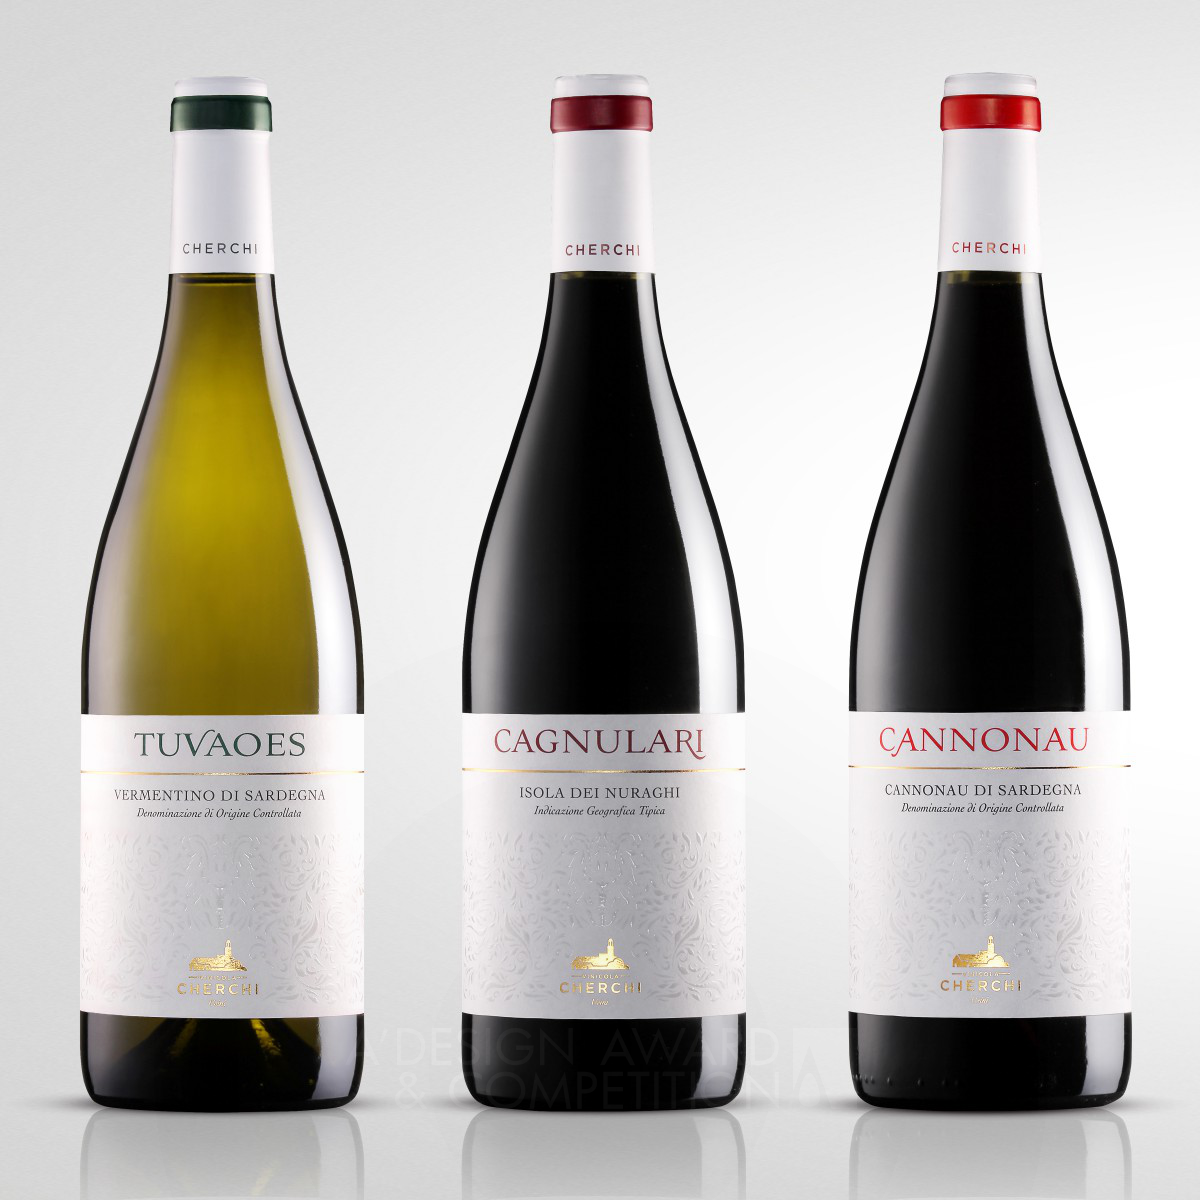 Giovanni Murgia wins Silver at the prestigious A' Packaging Design Award with Vinicola Cherchi Wine labels design.